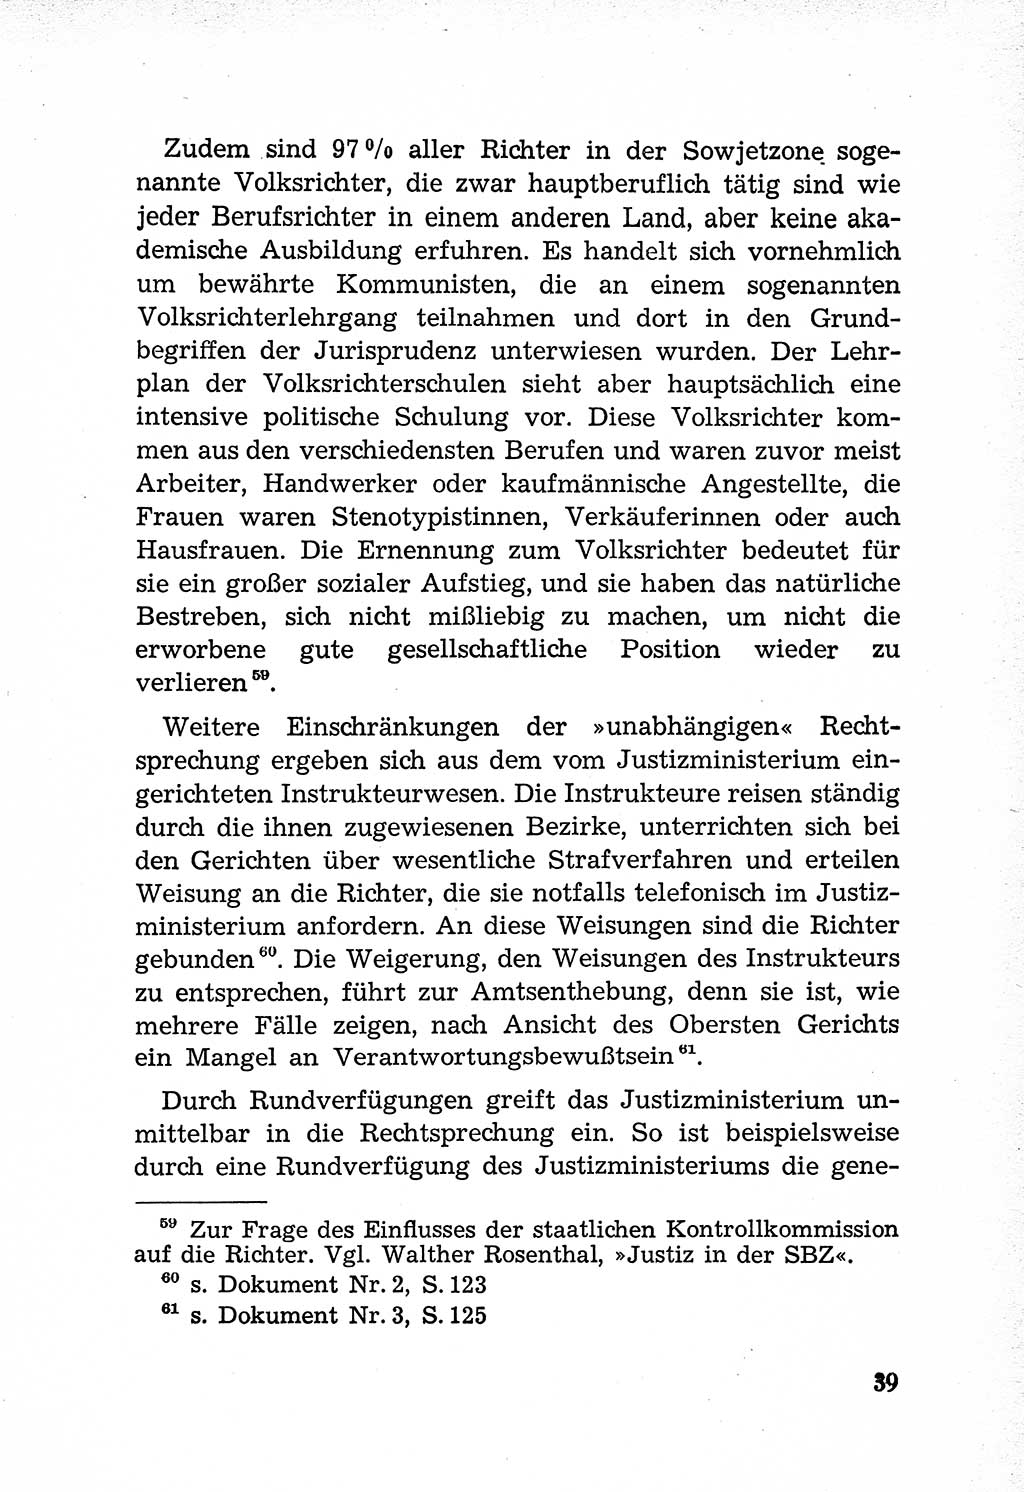 Rechtsstaat in zweierlei Hinsicht, Untersuchungsausschuß freiheitlicher Juristen (UfJ) [Bundesrepublik Deutschland (BRD)] 1956, Seite 39 (R.-St. UfJ BRD 1956, S. 39)